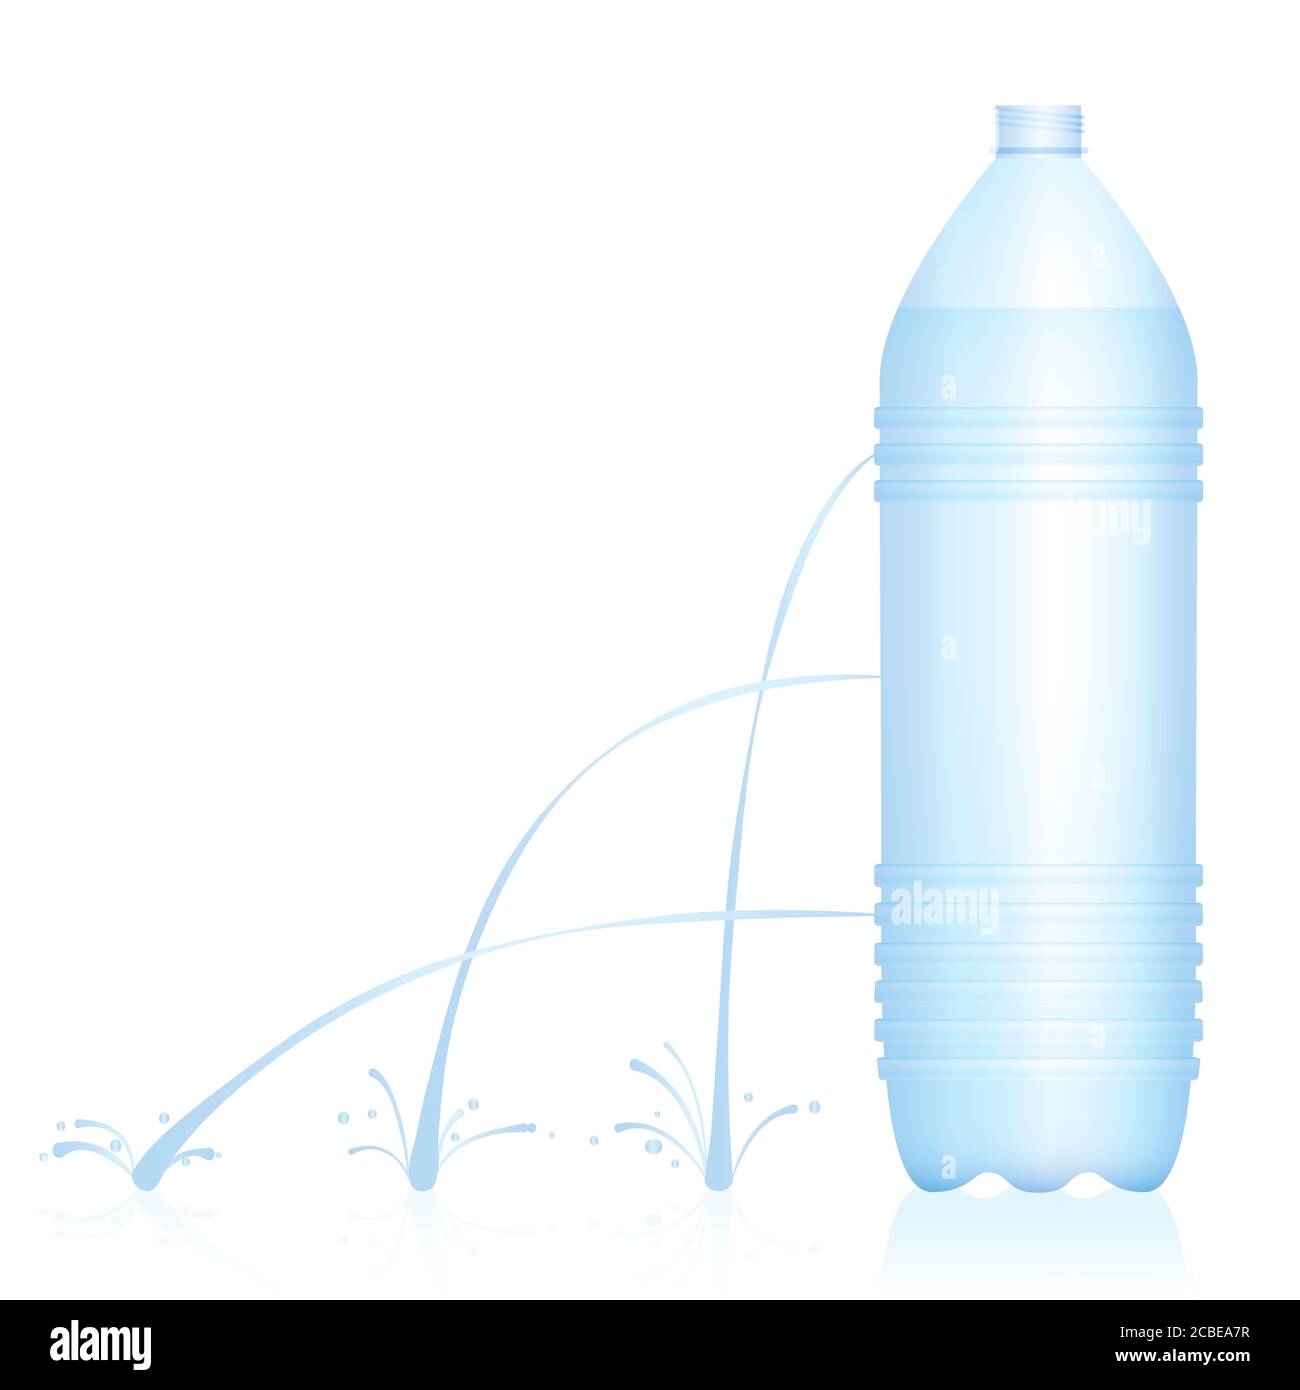 Plastikflasche mit verschiedenen Wasserstrahlen - schwacher, mittlerer und starker Strahl. Physikalisches Experiment zur Fluiddynamik. Stockfoto